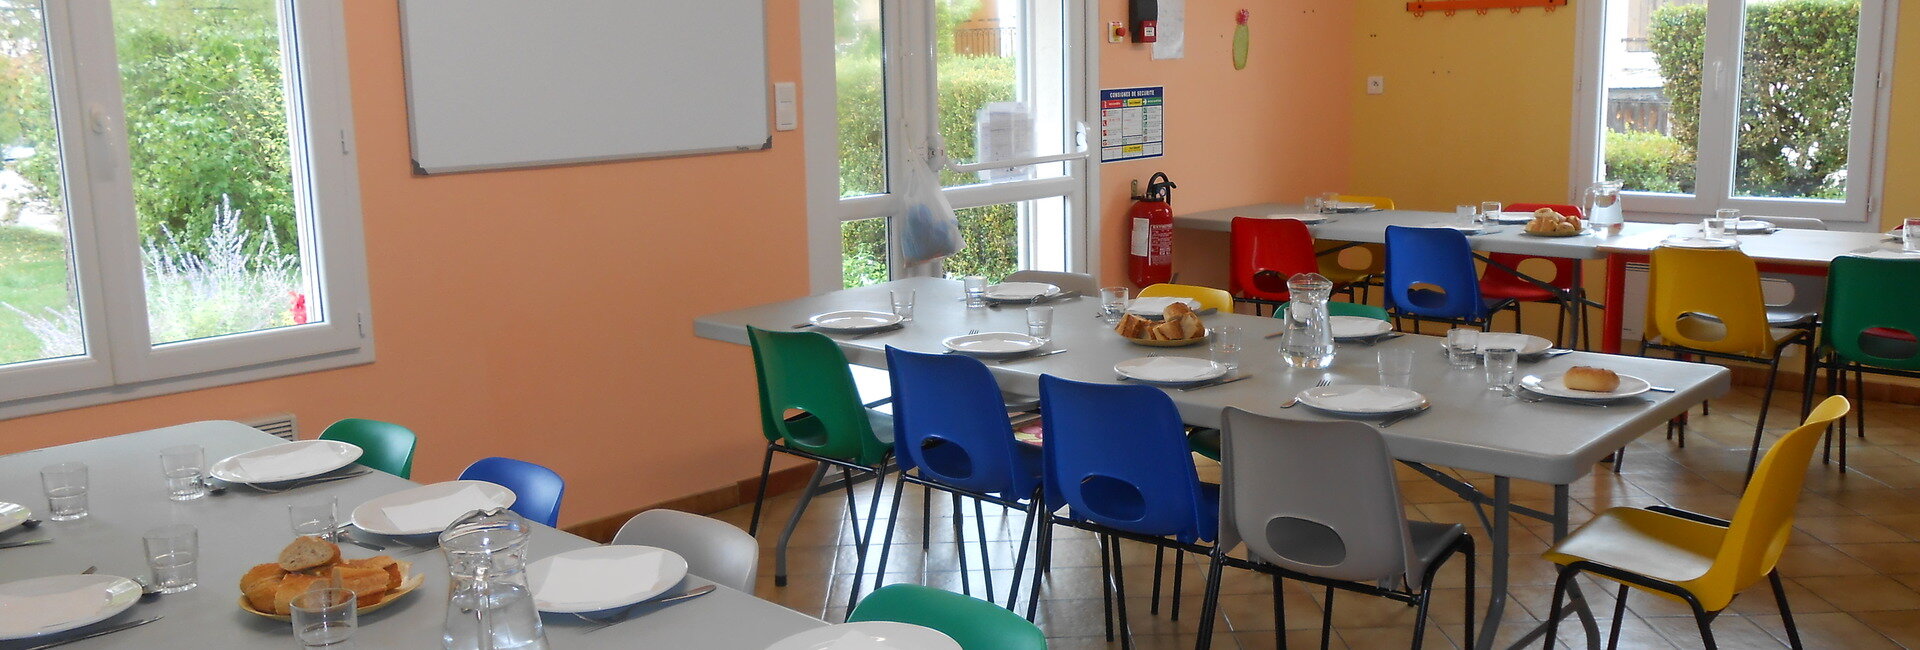 Ecole & Restauration scolaire de Belfort du Quercy